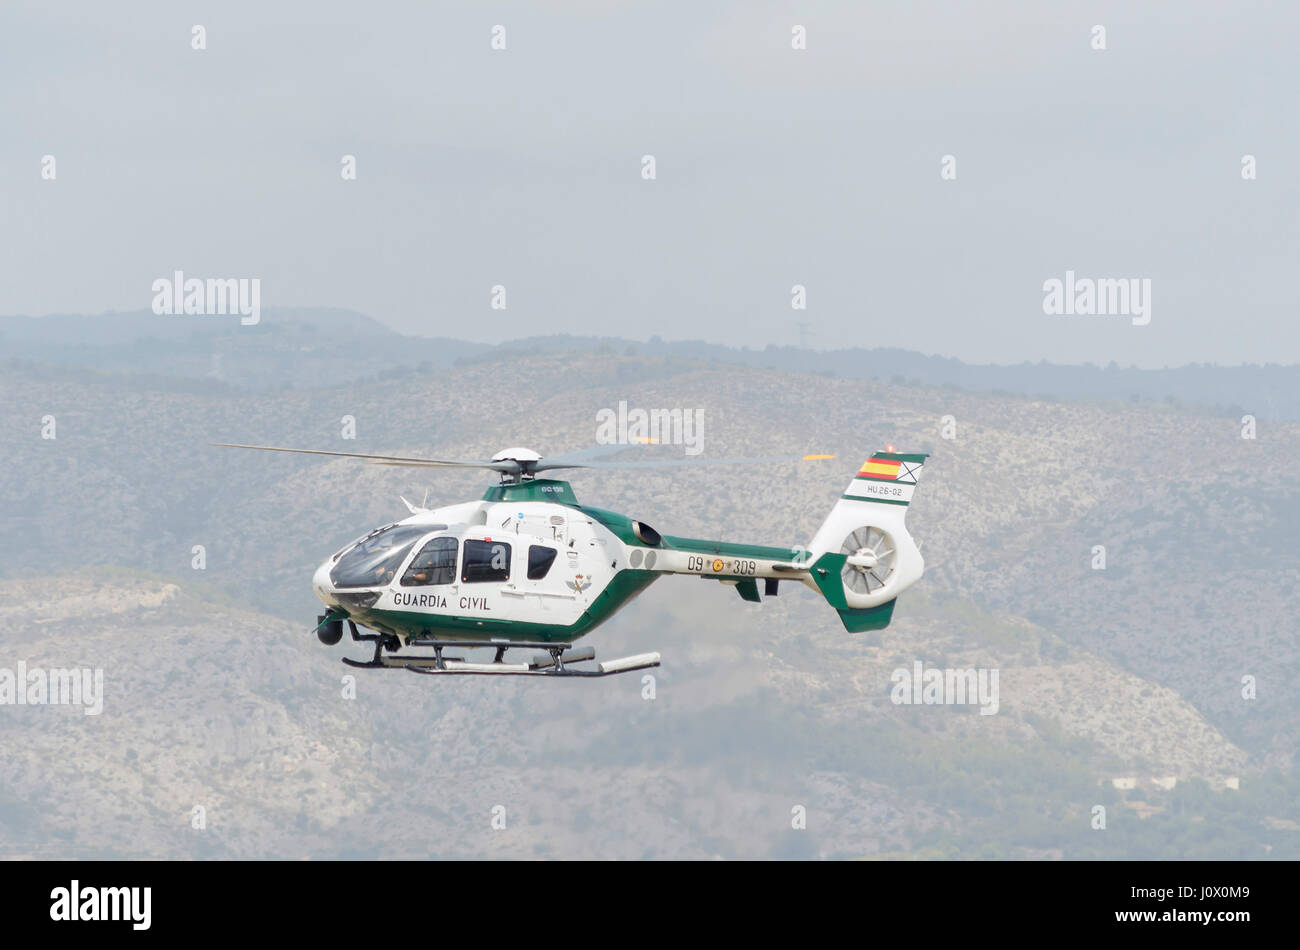 Hélicoptère Eurocopter EC135, Airbus (H135), de trafic de la Guardia Civil espagnole (corps de sécurité), est l'atterrissage à Castellon de la Plana's aviation. Banque D'Images